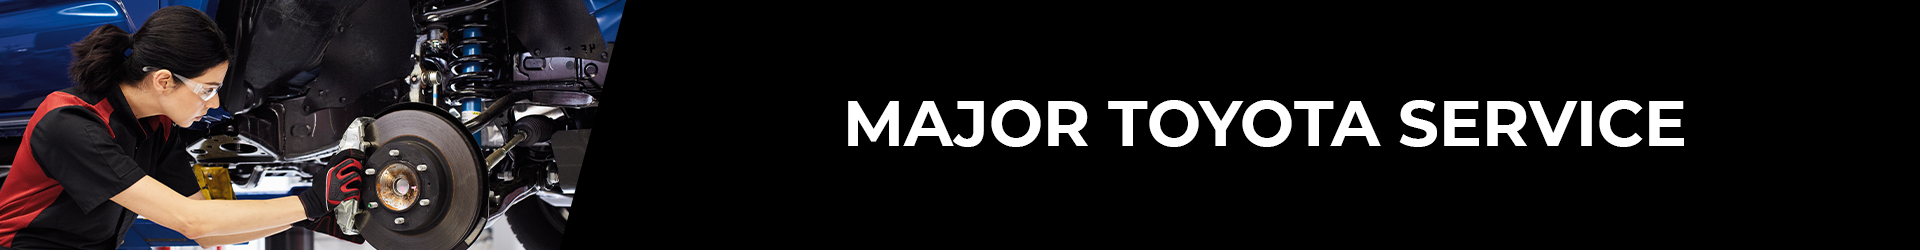 Banner_Major